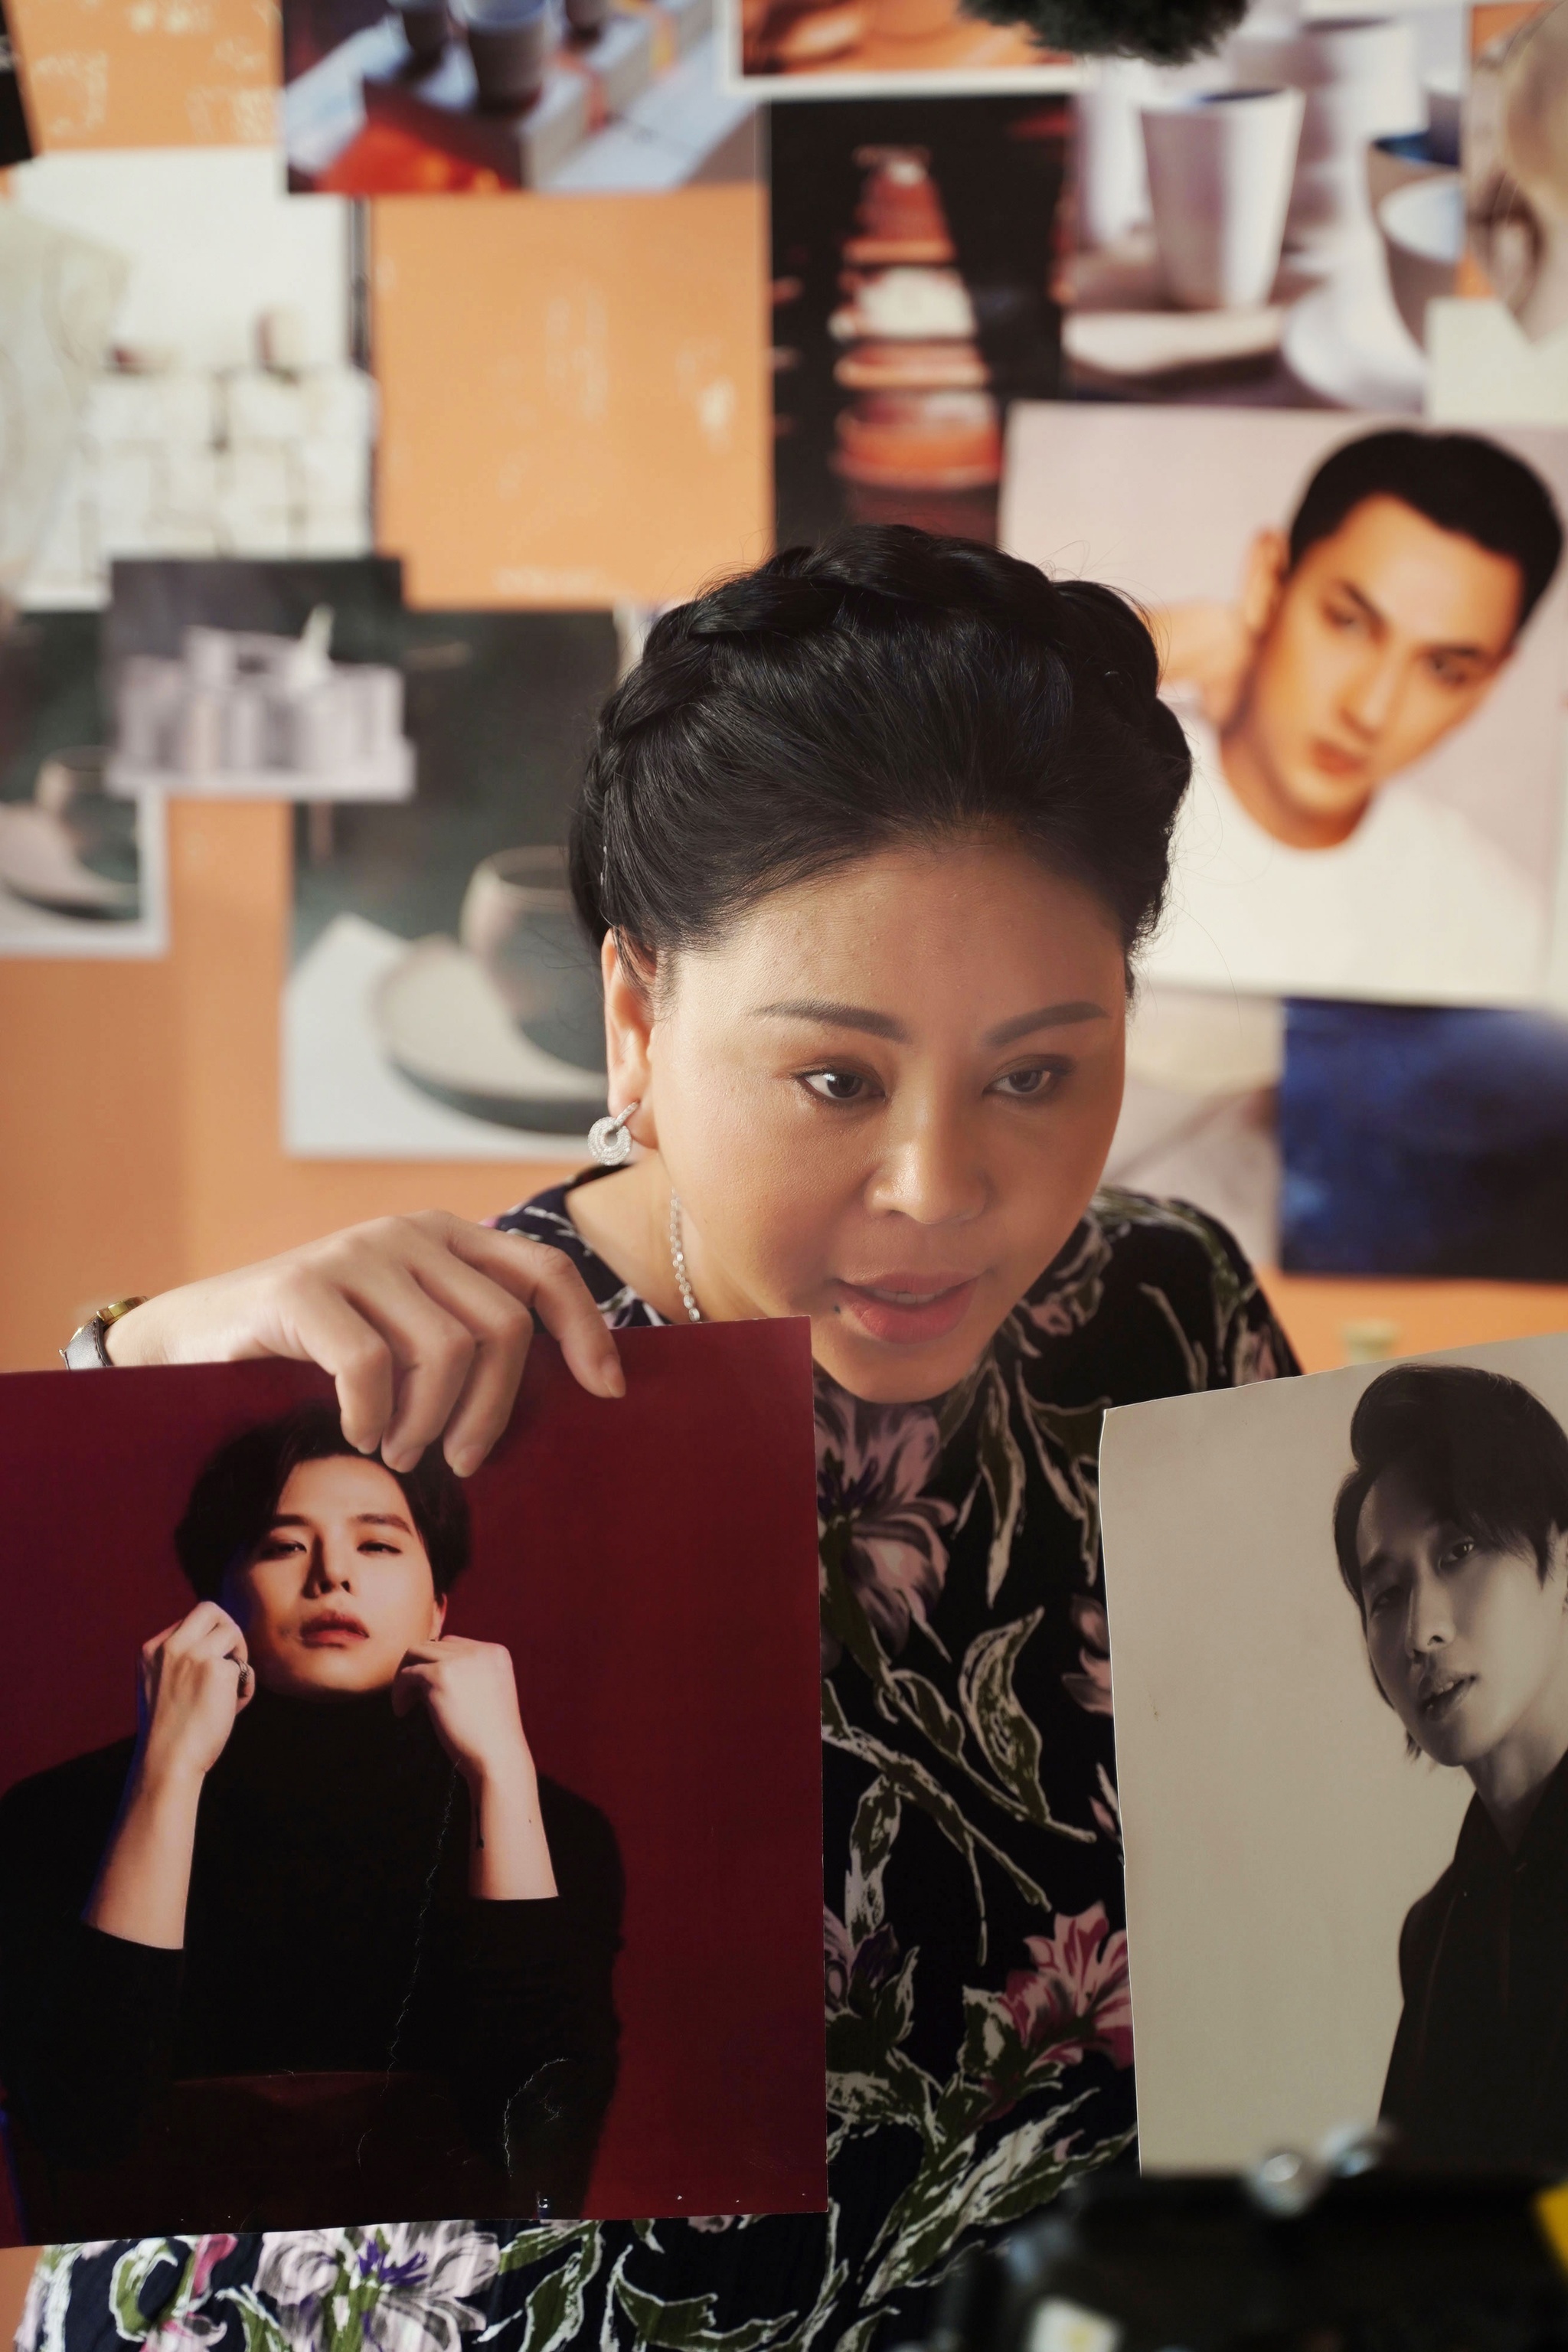 Chưa đầy tuần, 'Nhà bà Nữ' của Trấn Thành vượt mốc doanh thu 200 tỉ đồng - ảnh 4